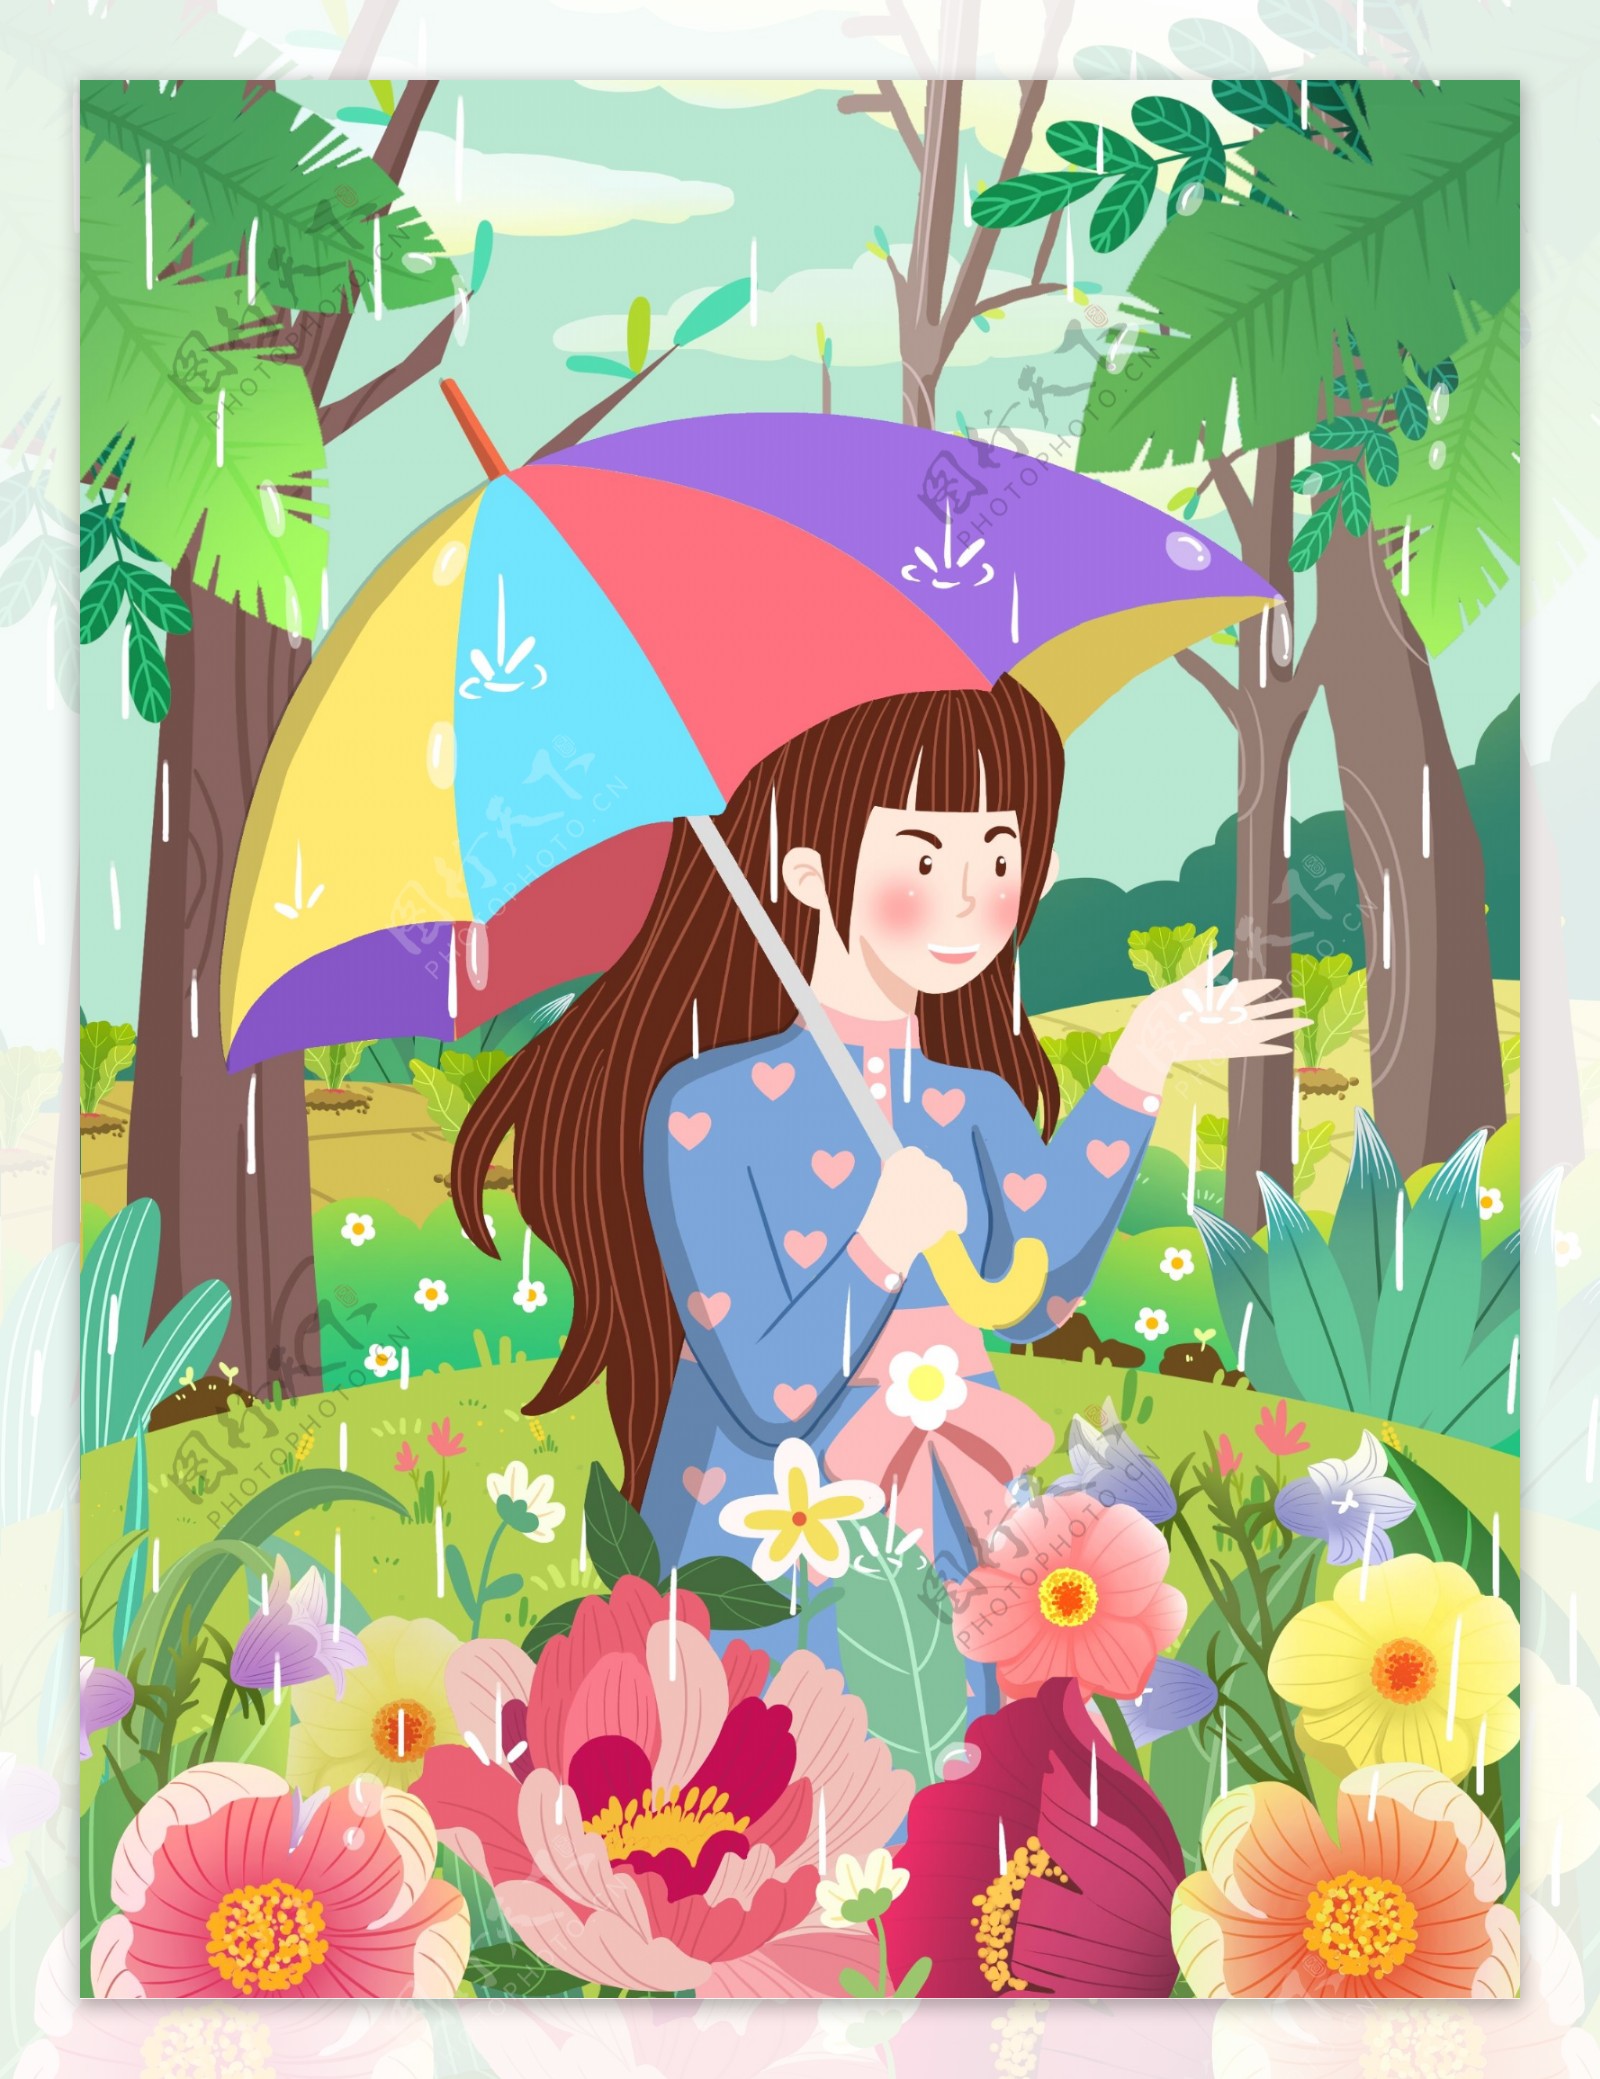 谷雨节气女孩打彩虹伞赏雨